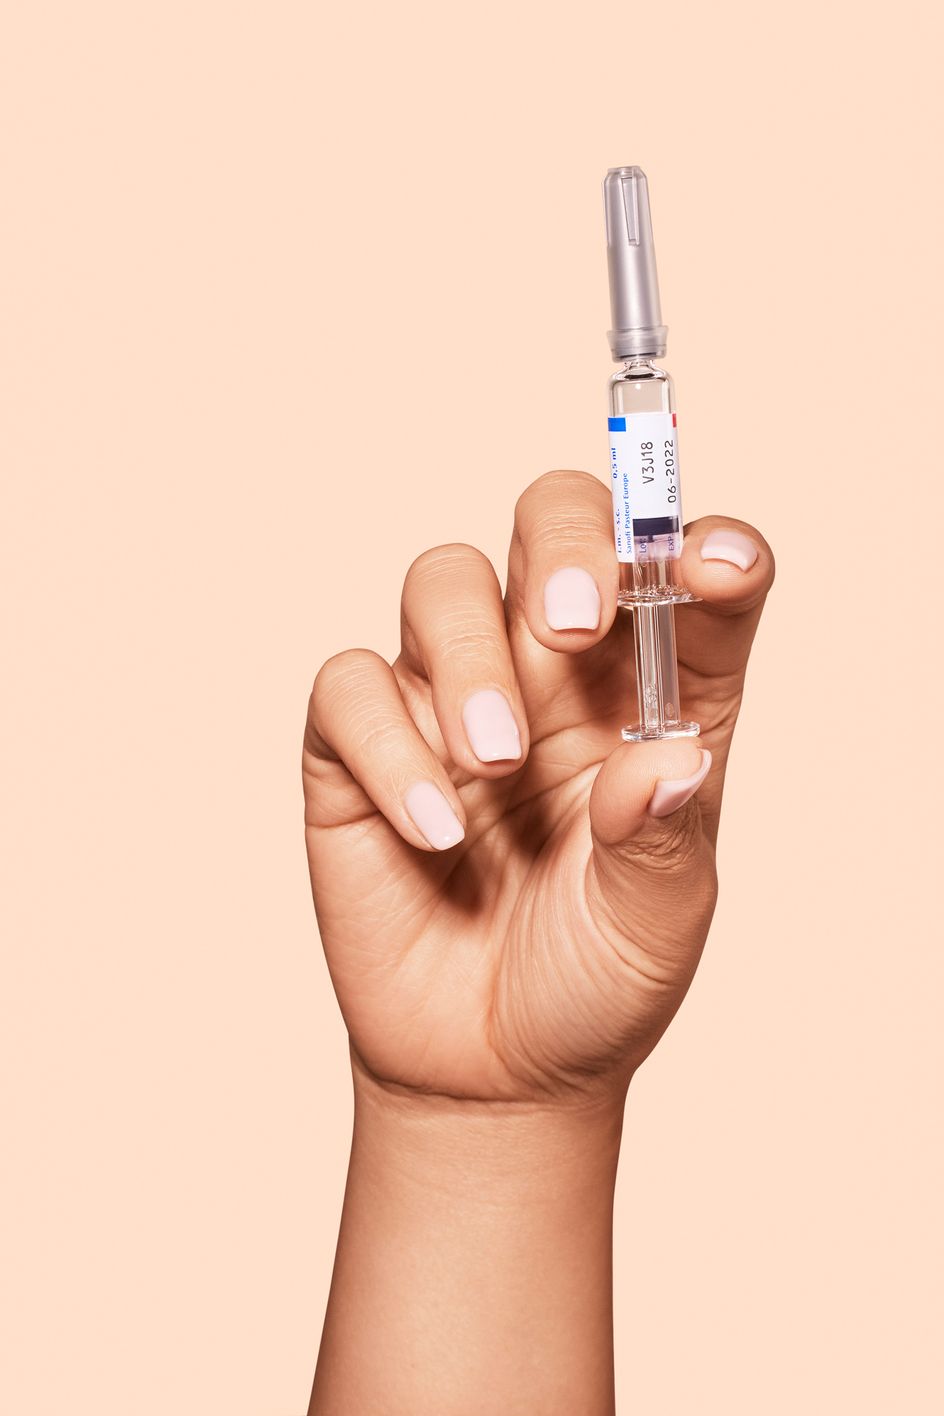 Hånd som holder en vaksine